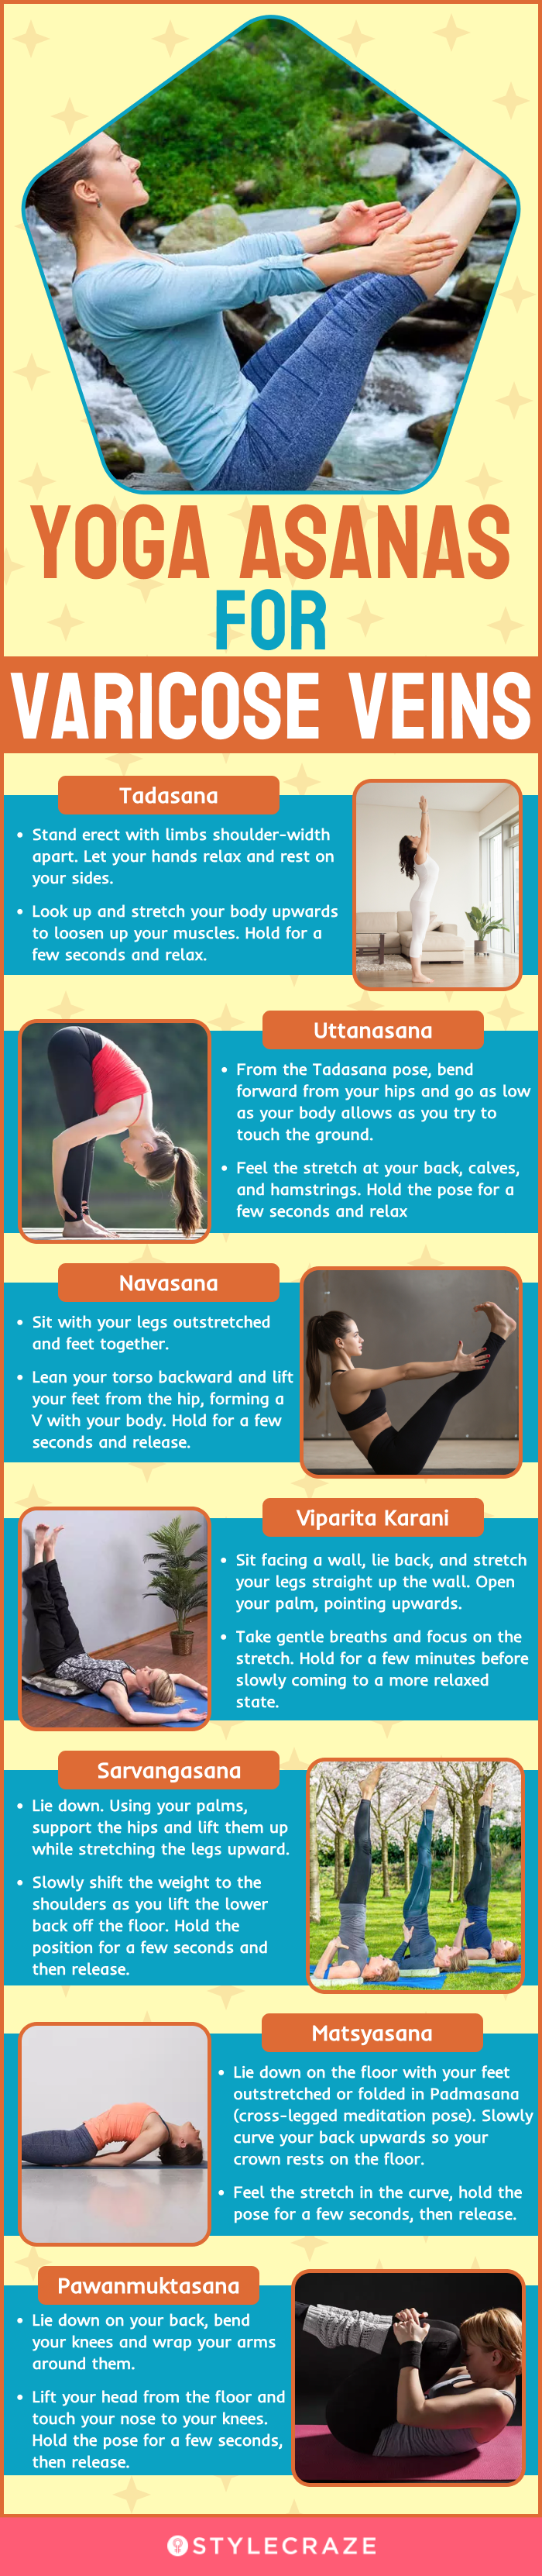 5 Yoga Asanas for Better Metabolic Health